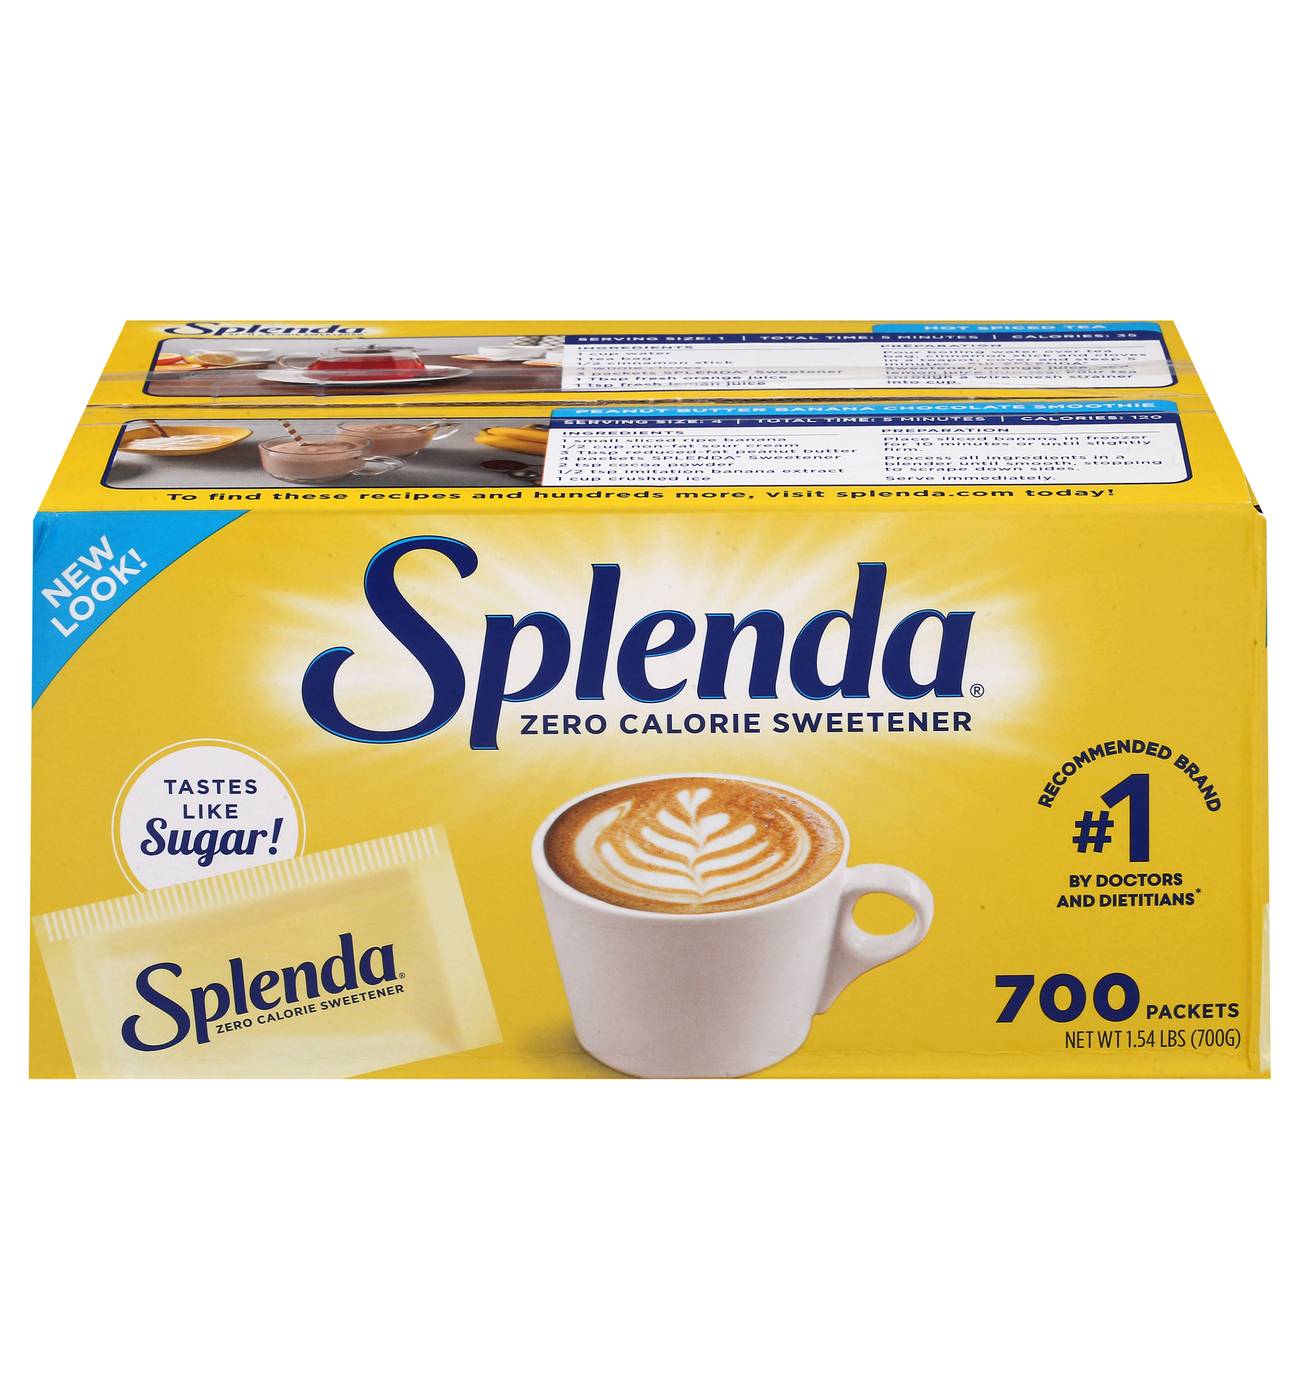 Splenda Zero Calorie Sweetner Packets; image 1 of 2